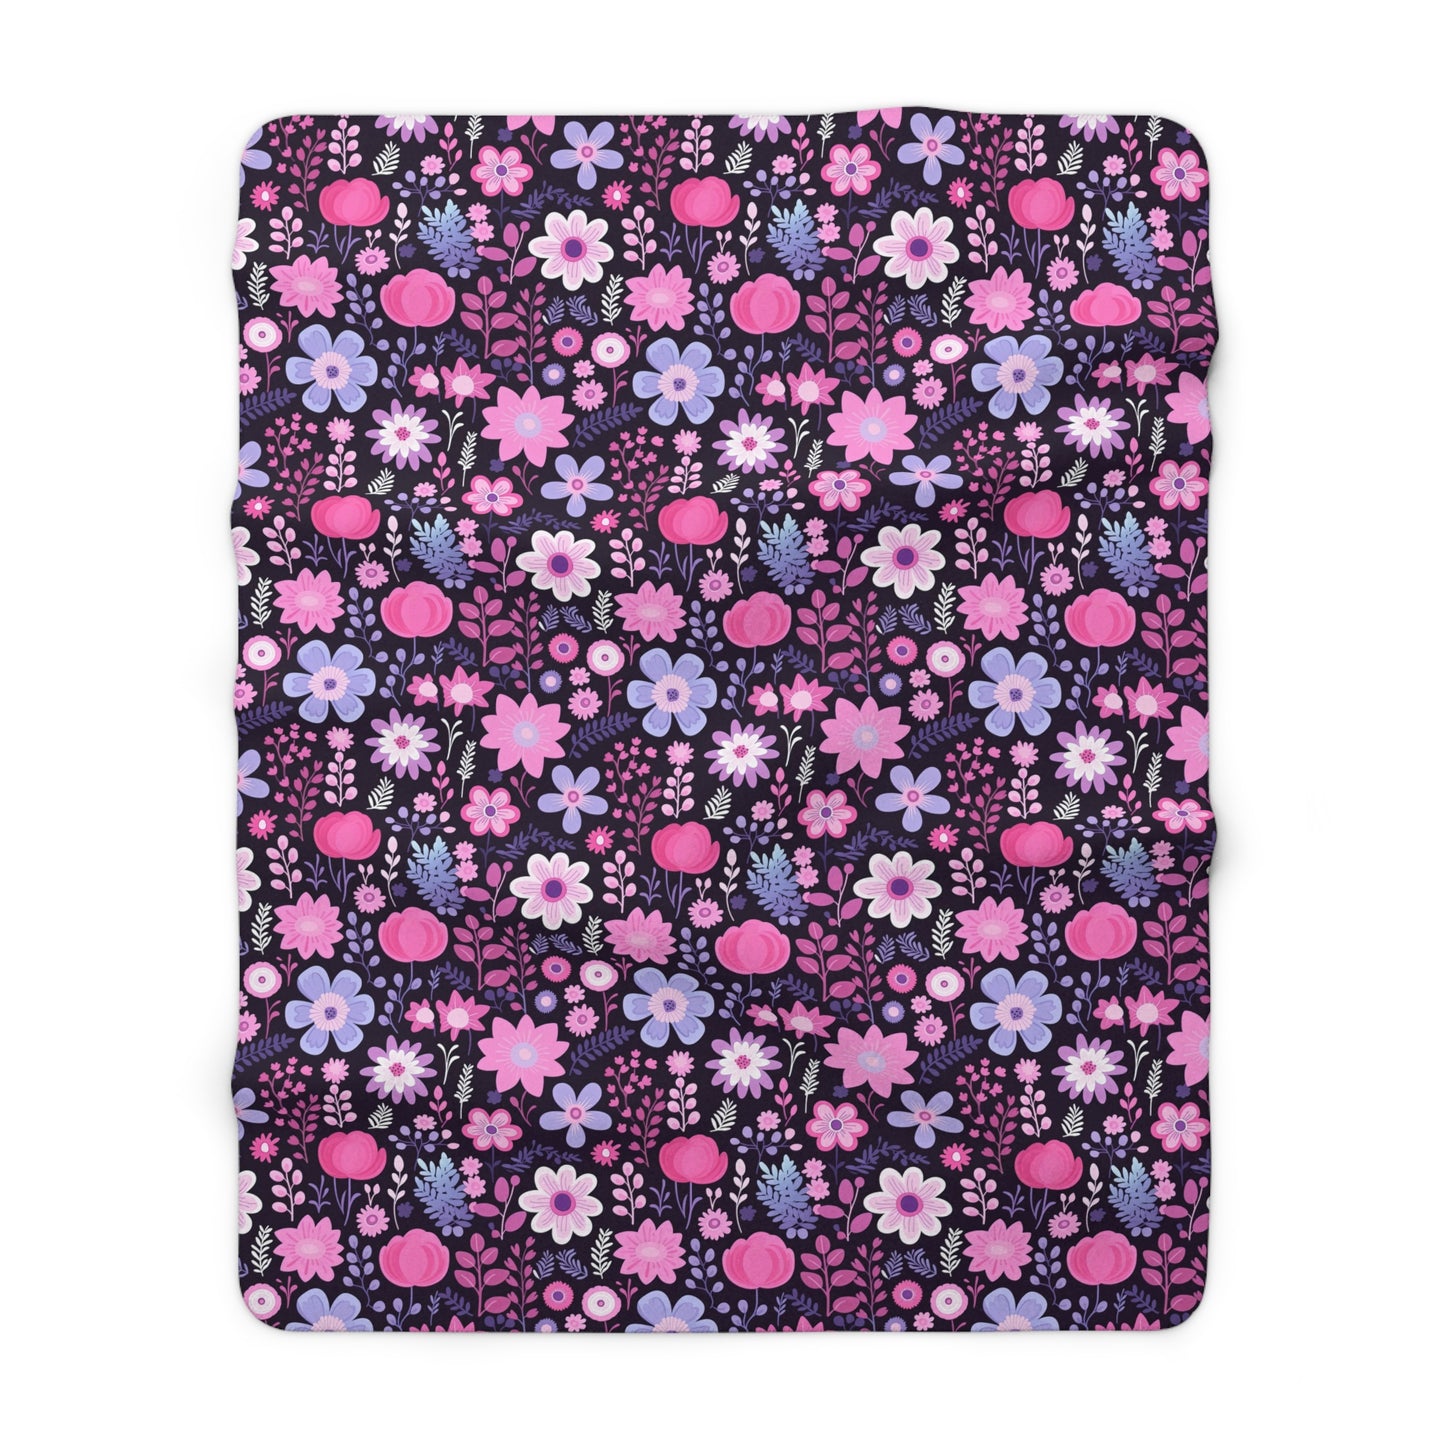 Dark Purple Floral Sherpa Blanket - Pink Floral Sherpa Blanket